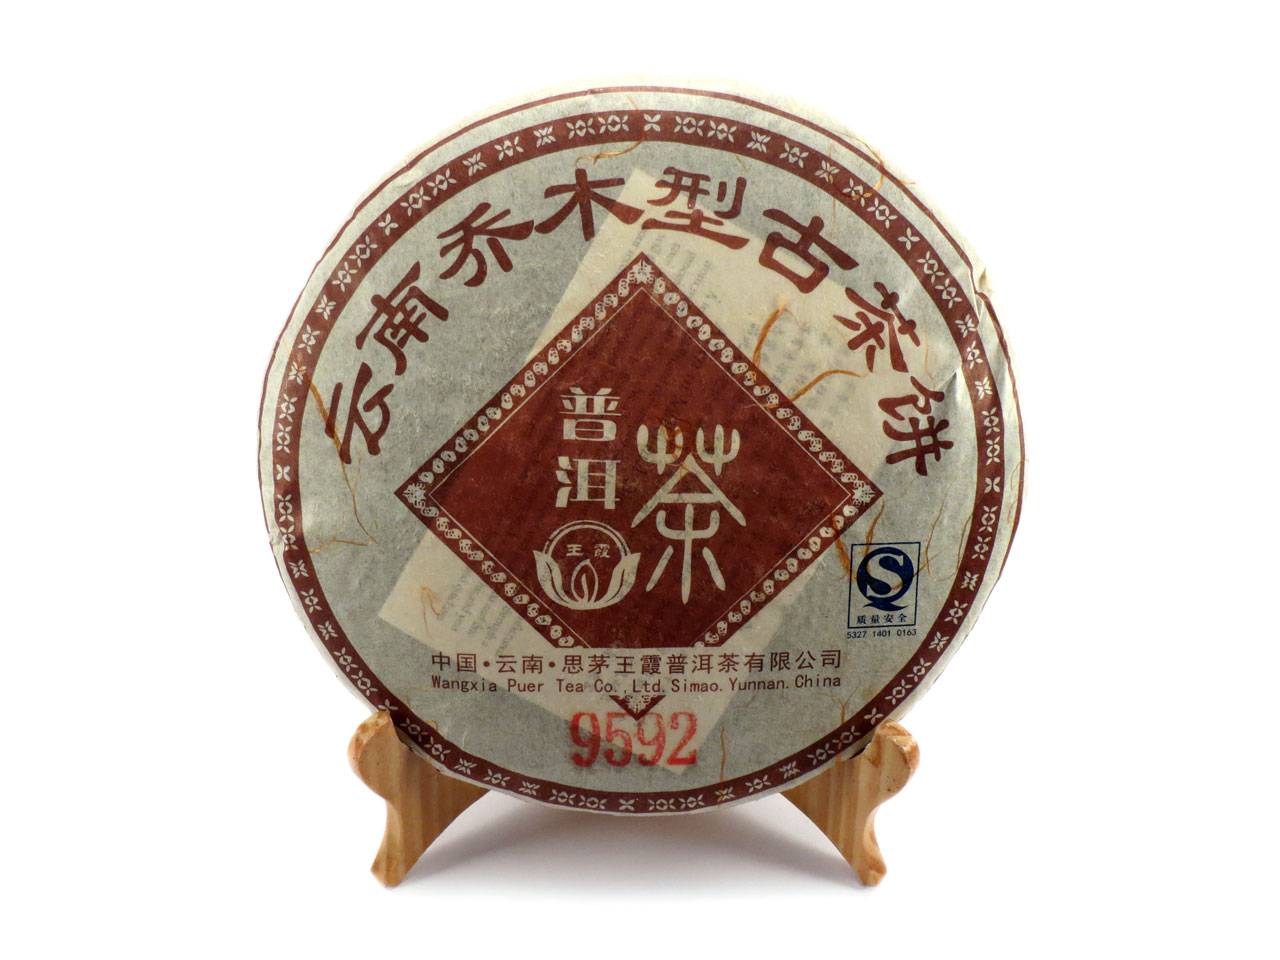 Юньнань пуэр - напиток xxi века с древней историей